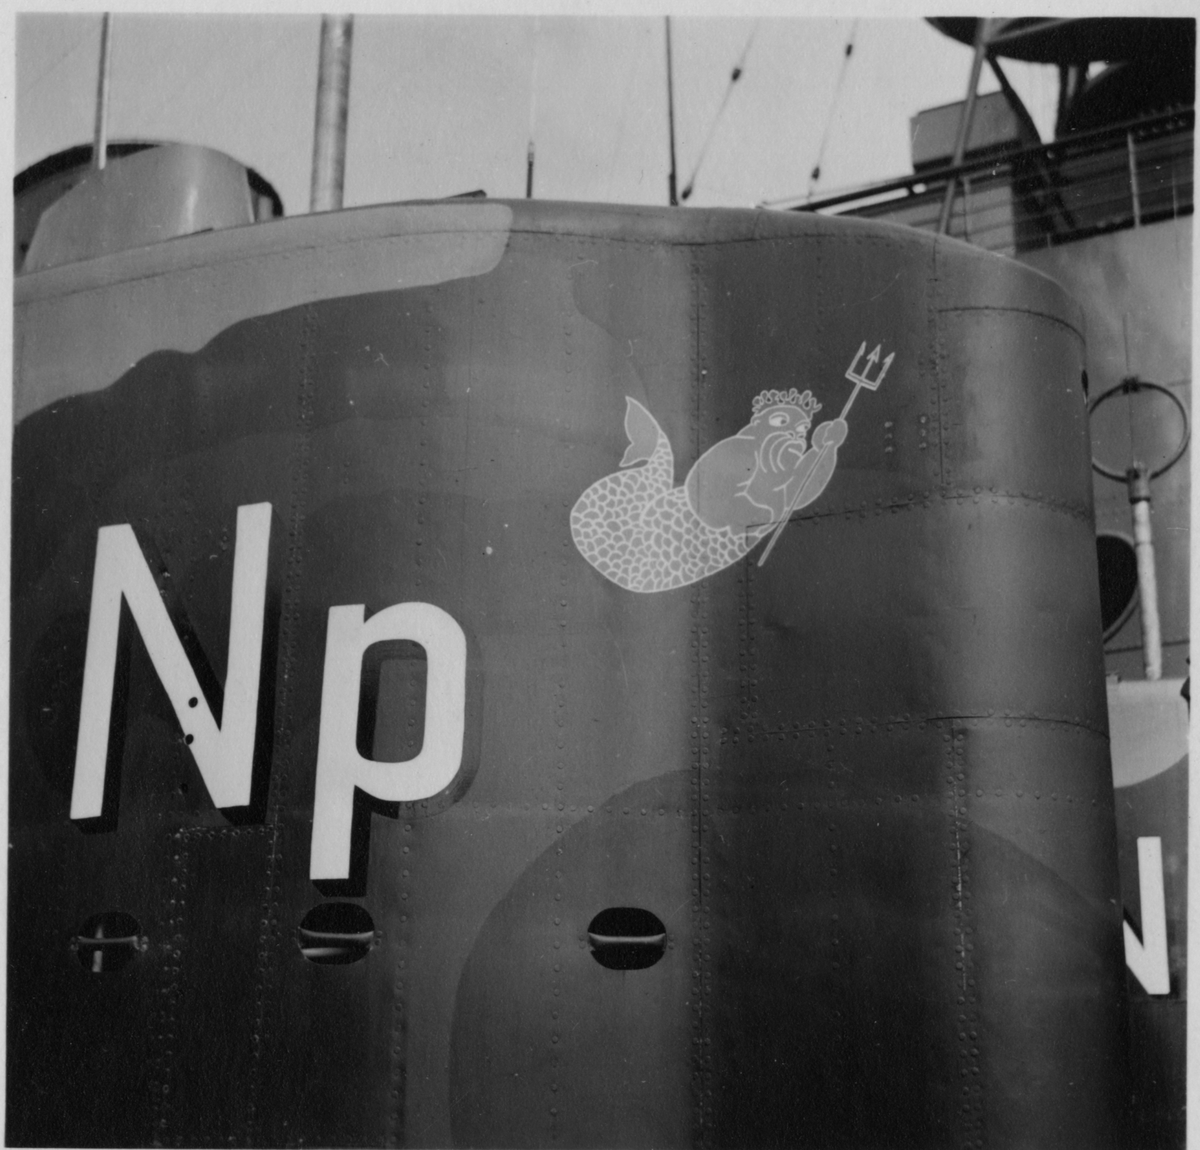 Lennart Wållberg Norrköping var förste kock på ubåten Neptun 1954 Neptuns långresa 1954.
Vår maskot på tornet under färdigställande.